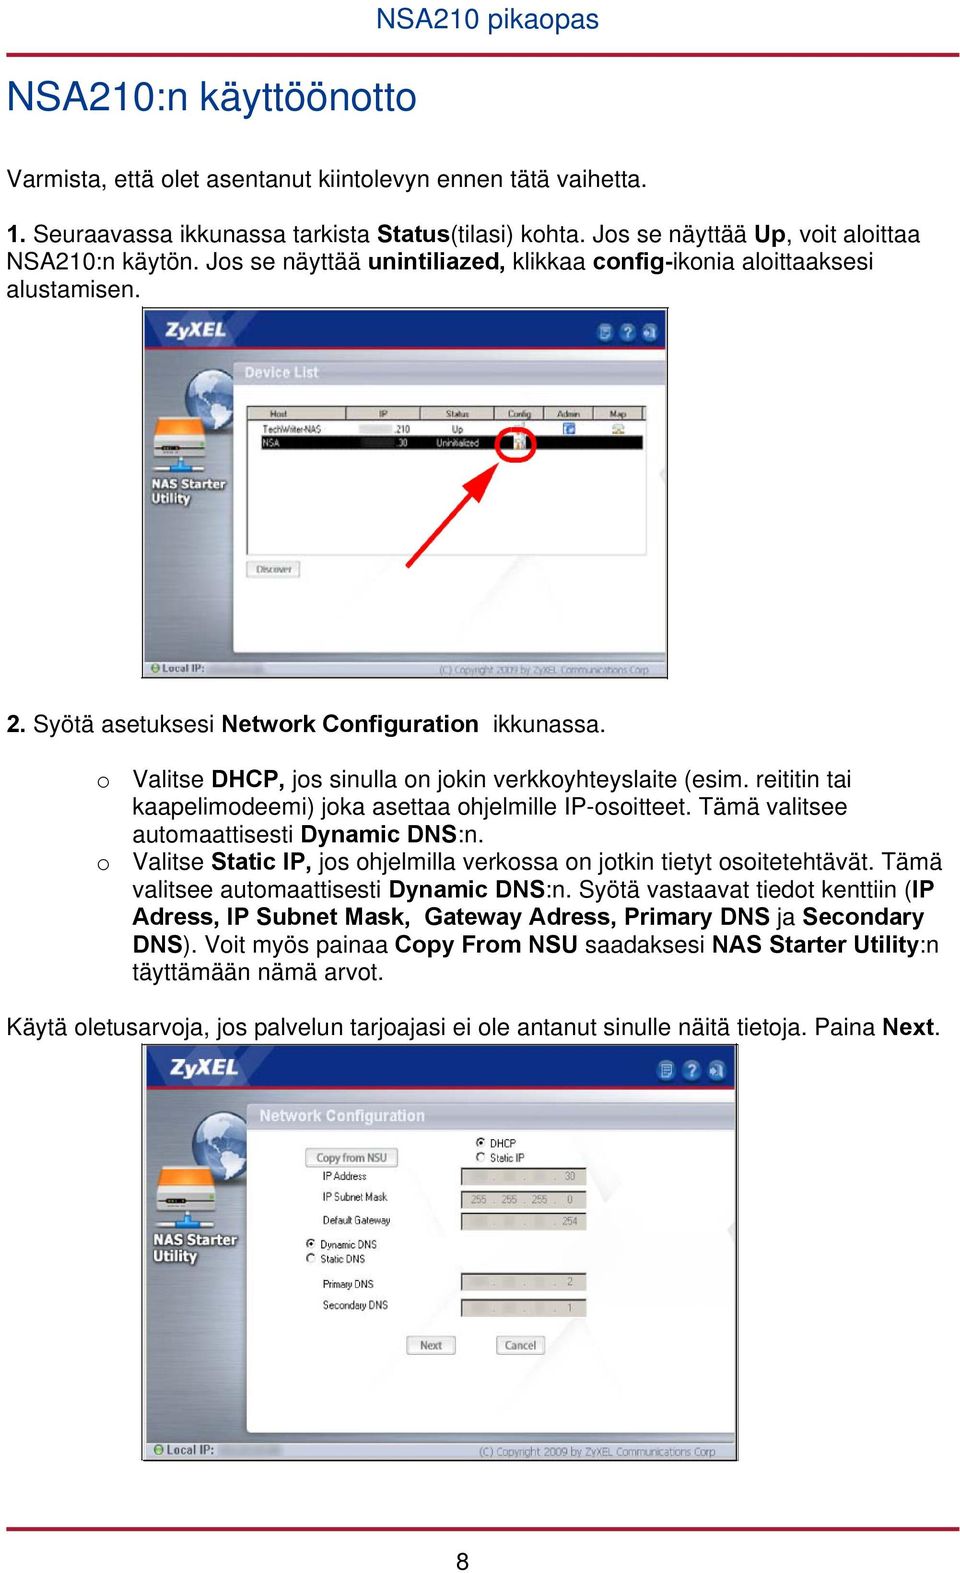 o Valitse DHCP, jos sinulla on jokin verkkoyhteyslaite (esim. reititin tai kaapelimodeemi) joka asettaa ohjelmille IP-osoitteet. Tämä valitsee automaattisesti Dynamic DNS:n.